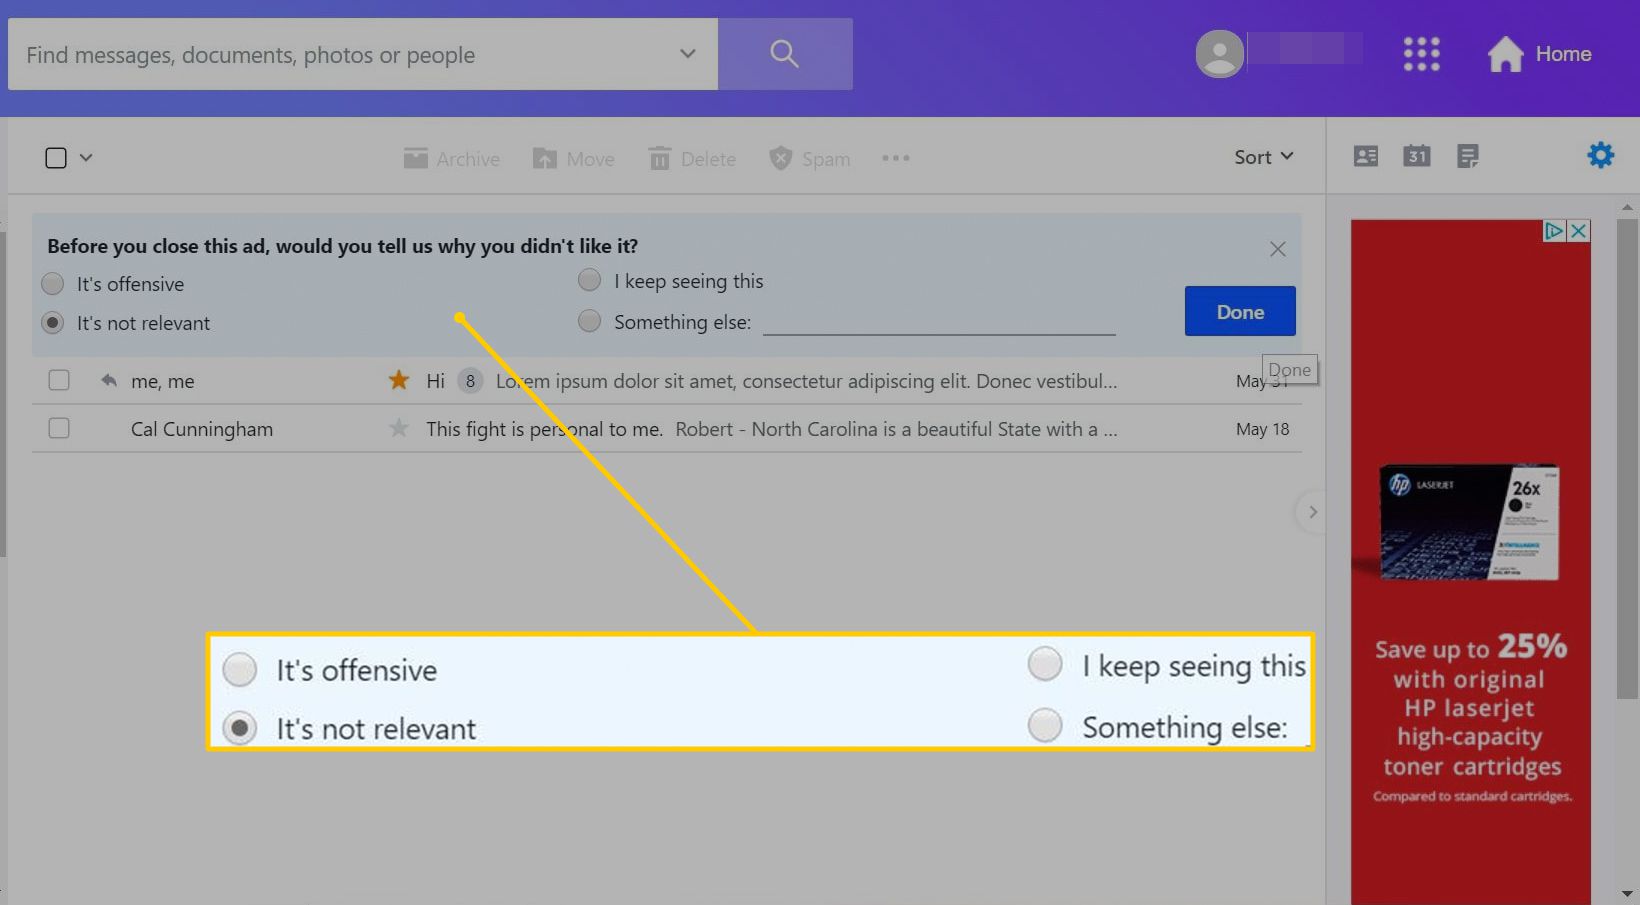 Čtyři možnosti, proč se vám nelíbí konkrétní reklama na Yahoo Mail pro web